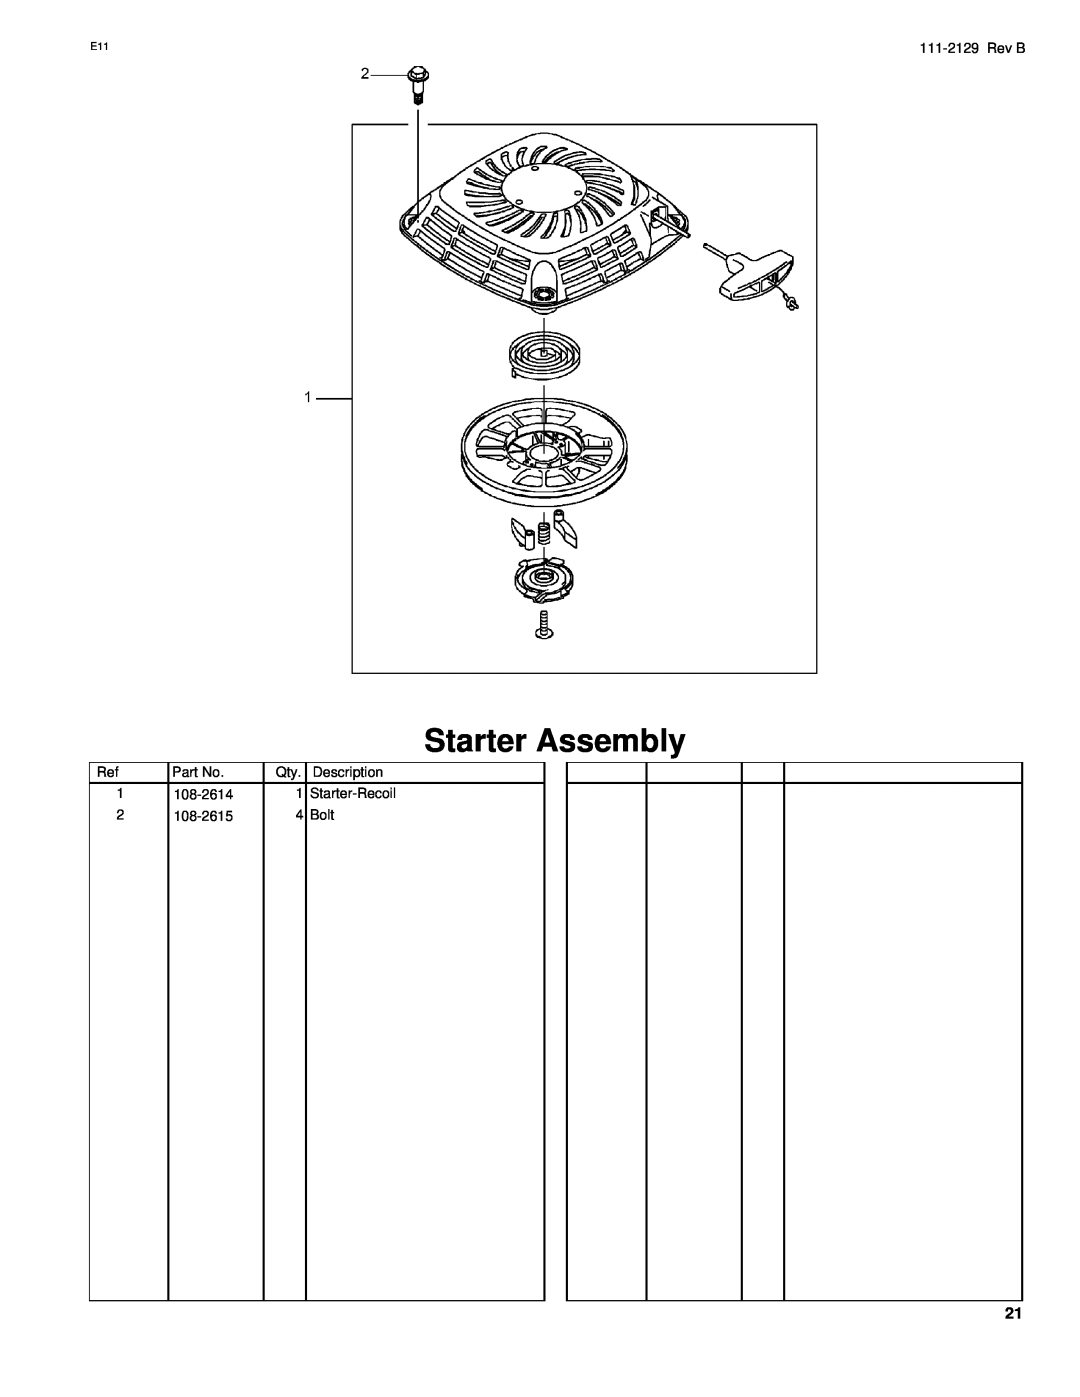 Hayter Mowers G002741 manual Starter Assembly, 111-2129Rev B, Description, 108-2614, Starter-Recoil, 108-2615, Bolt 